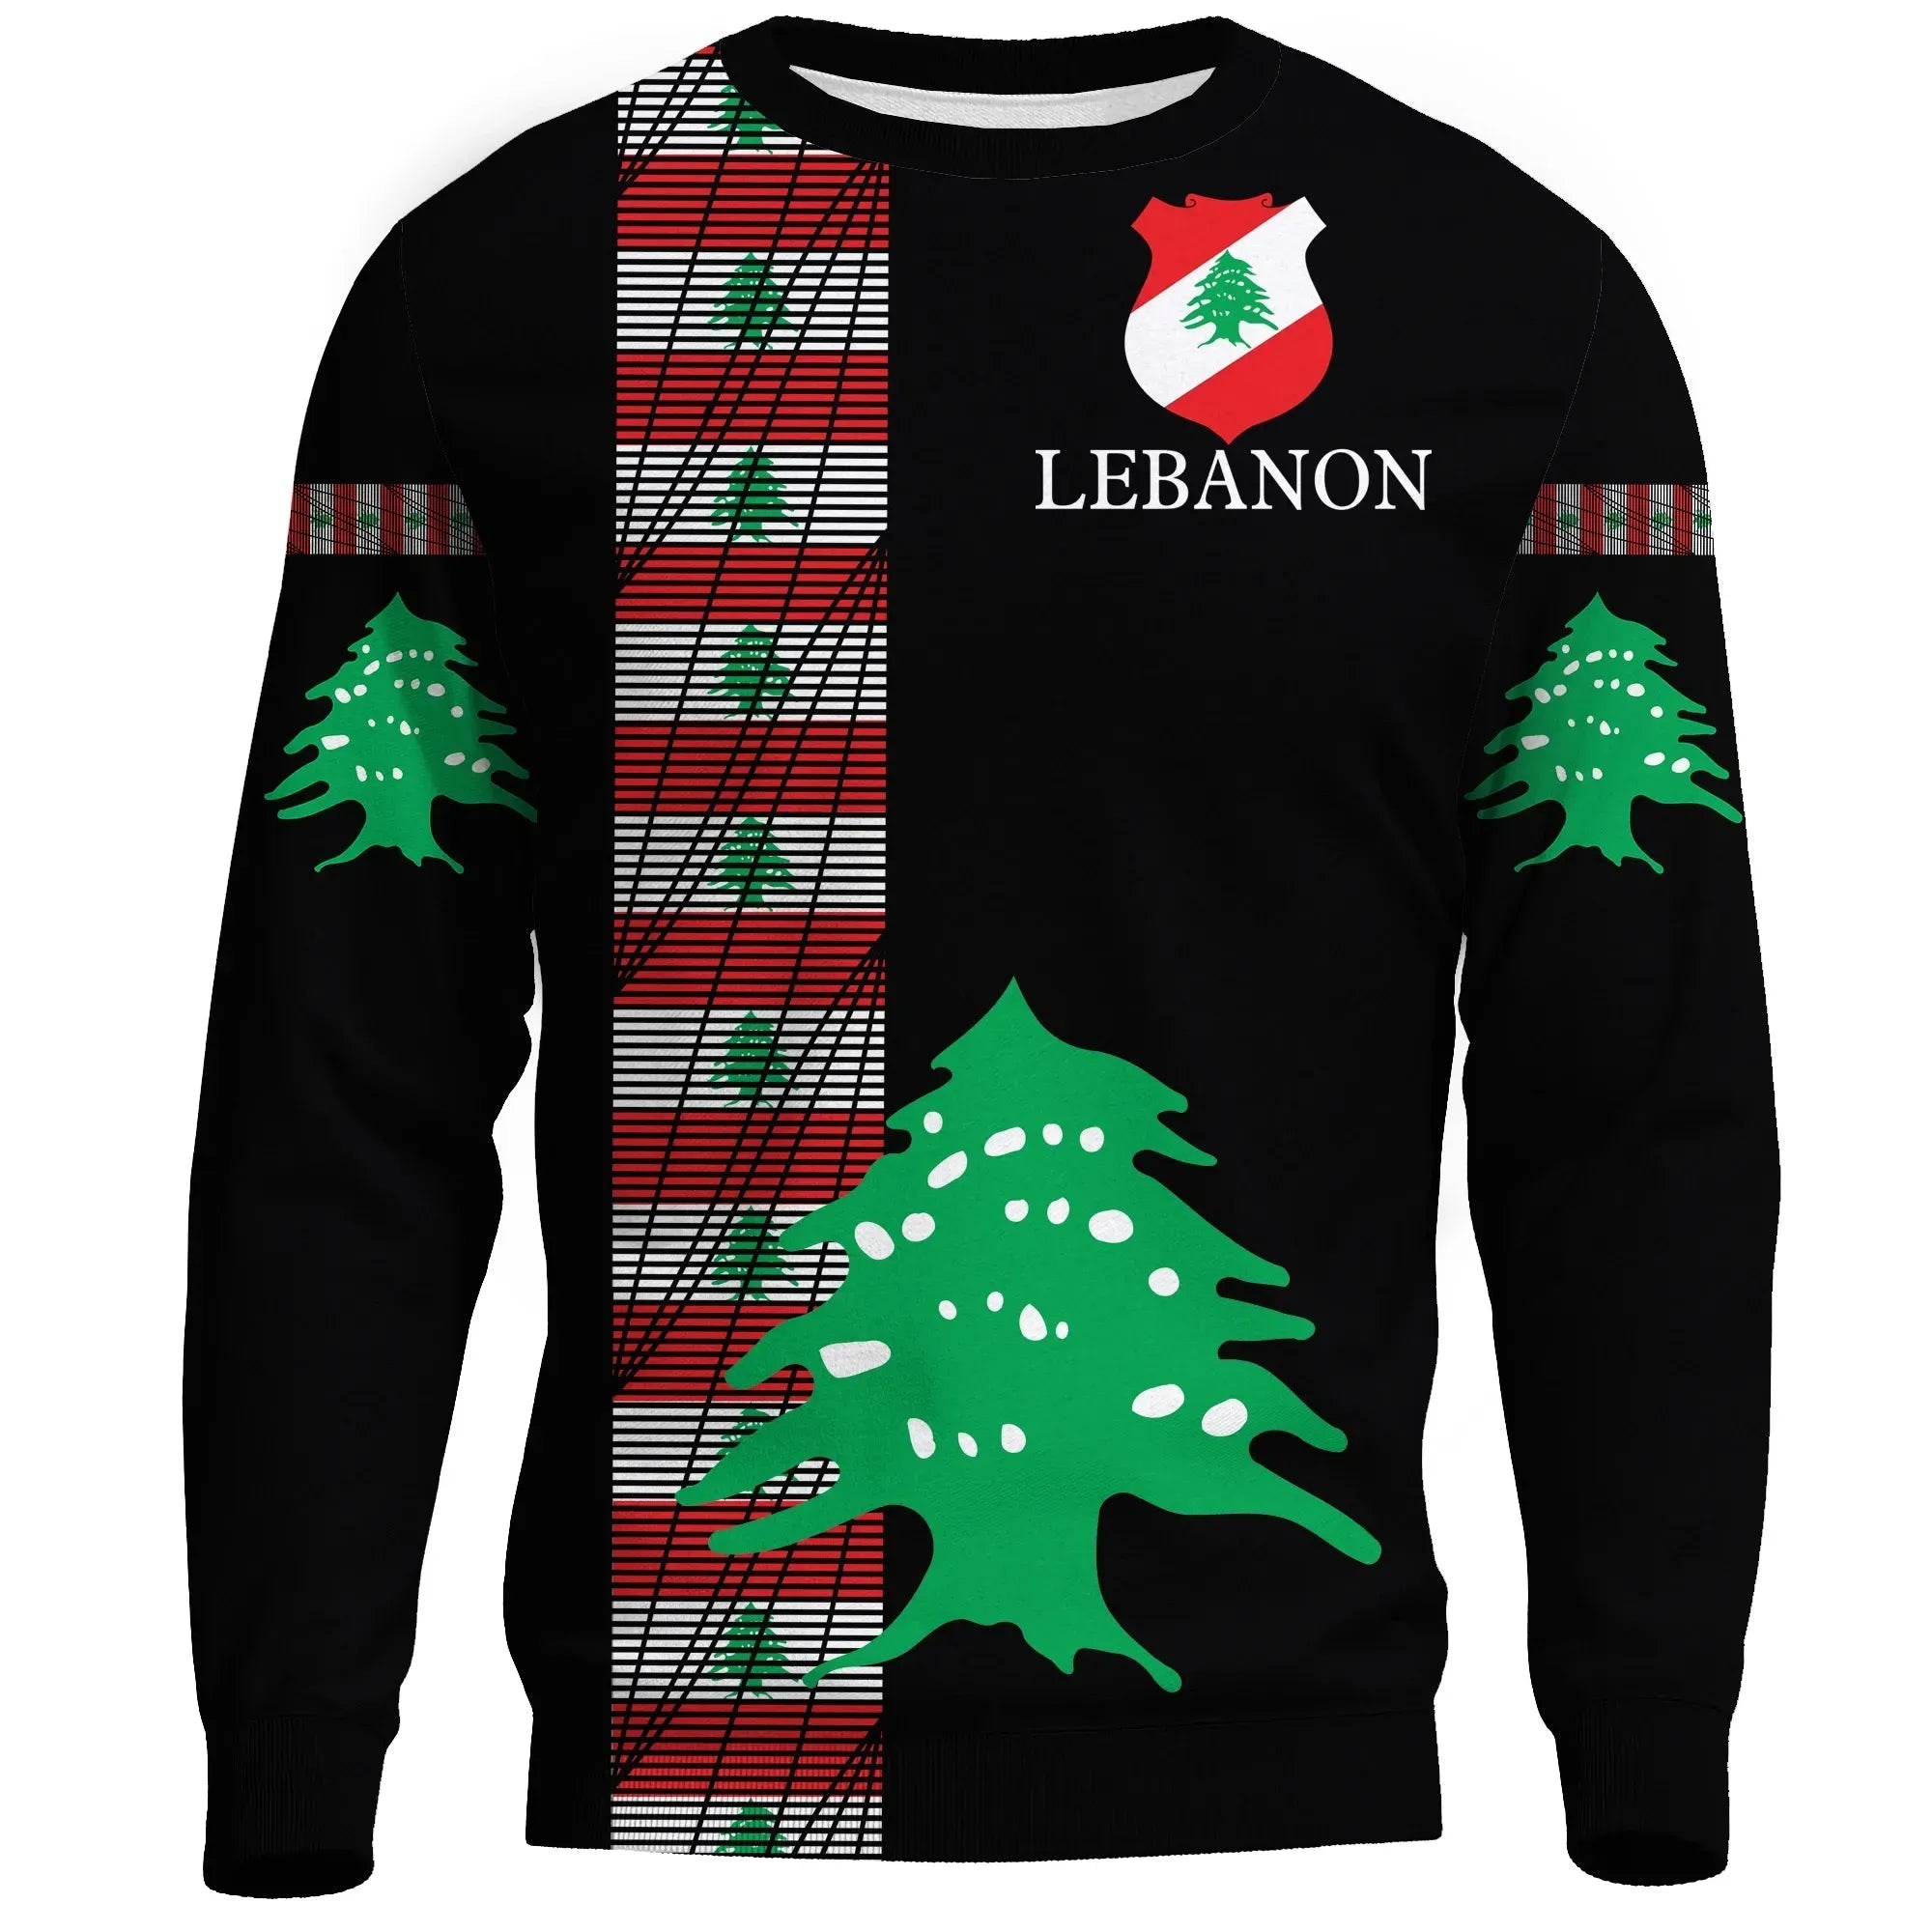 lebanon-united-sweatshirt